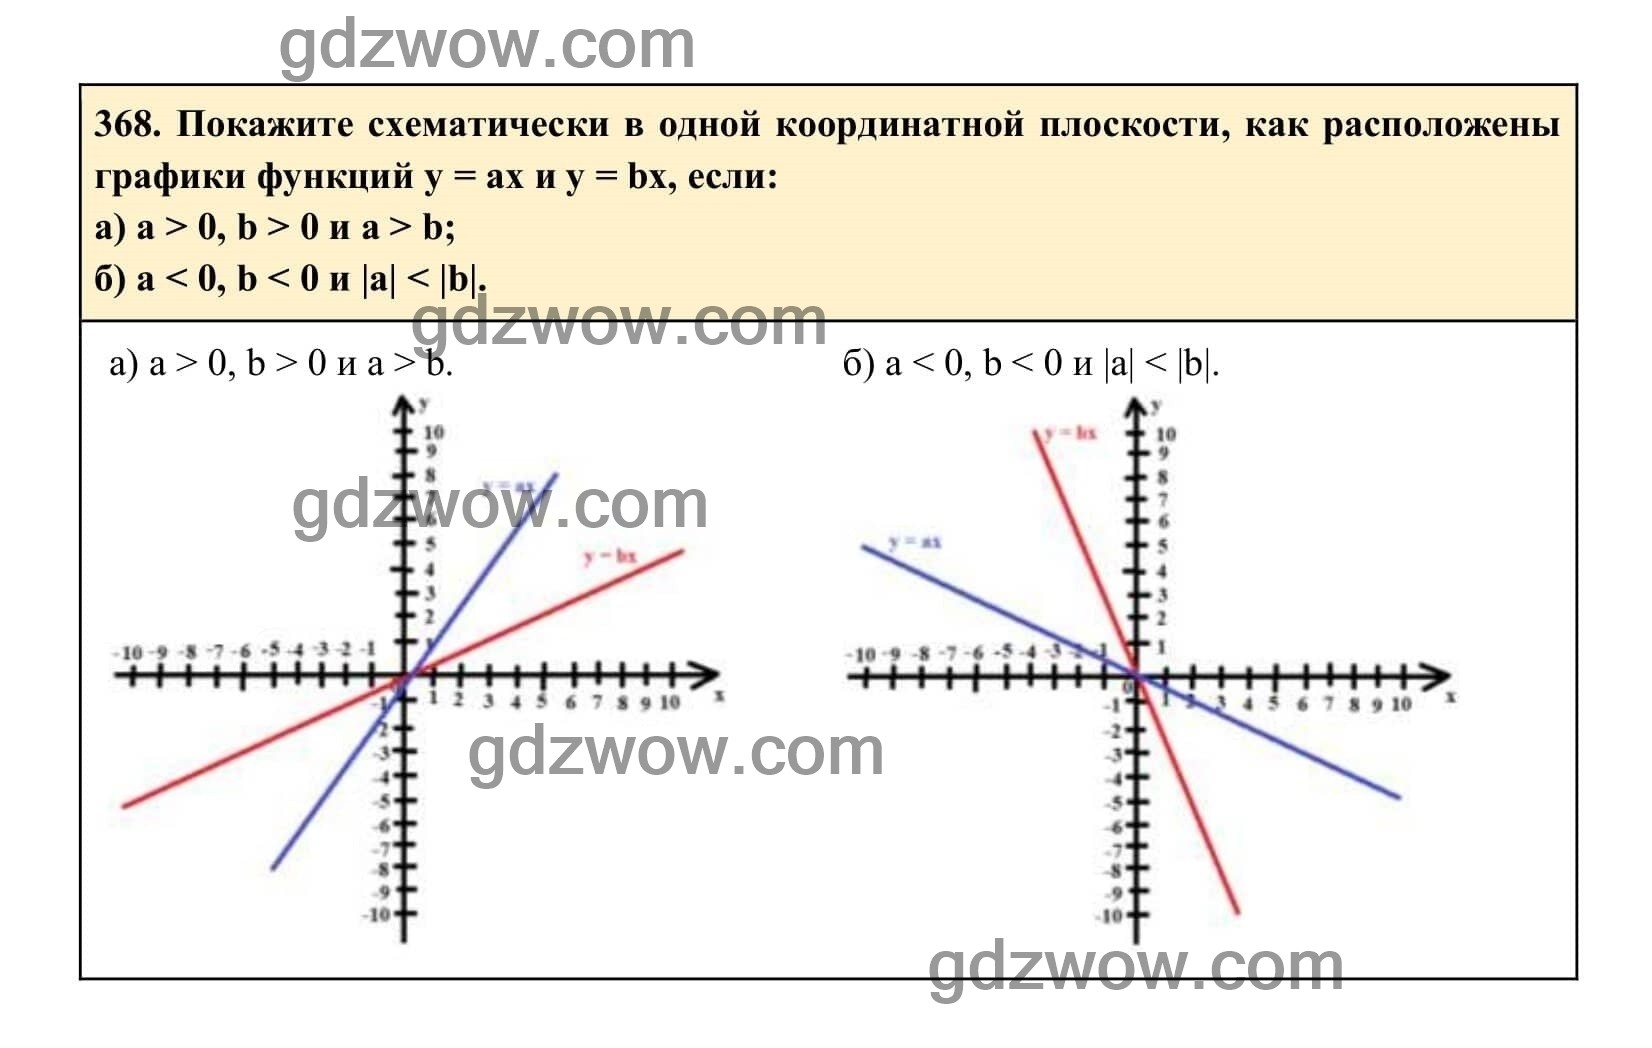 Упражнение 368 - ГДЗ по Алгебре 7 класс Учебник Макарычев (решебник) - GDZwow